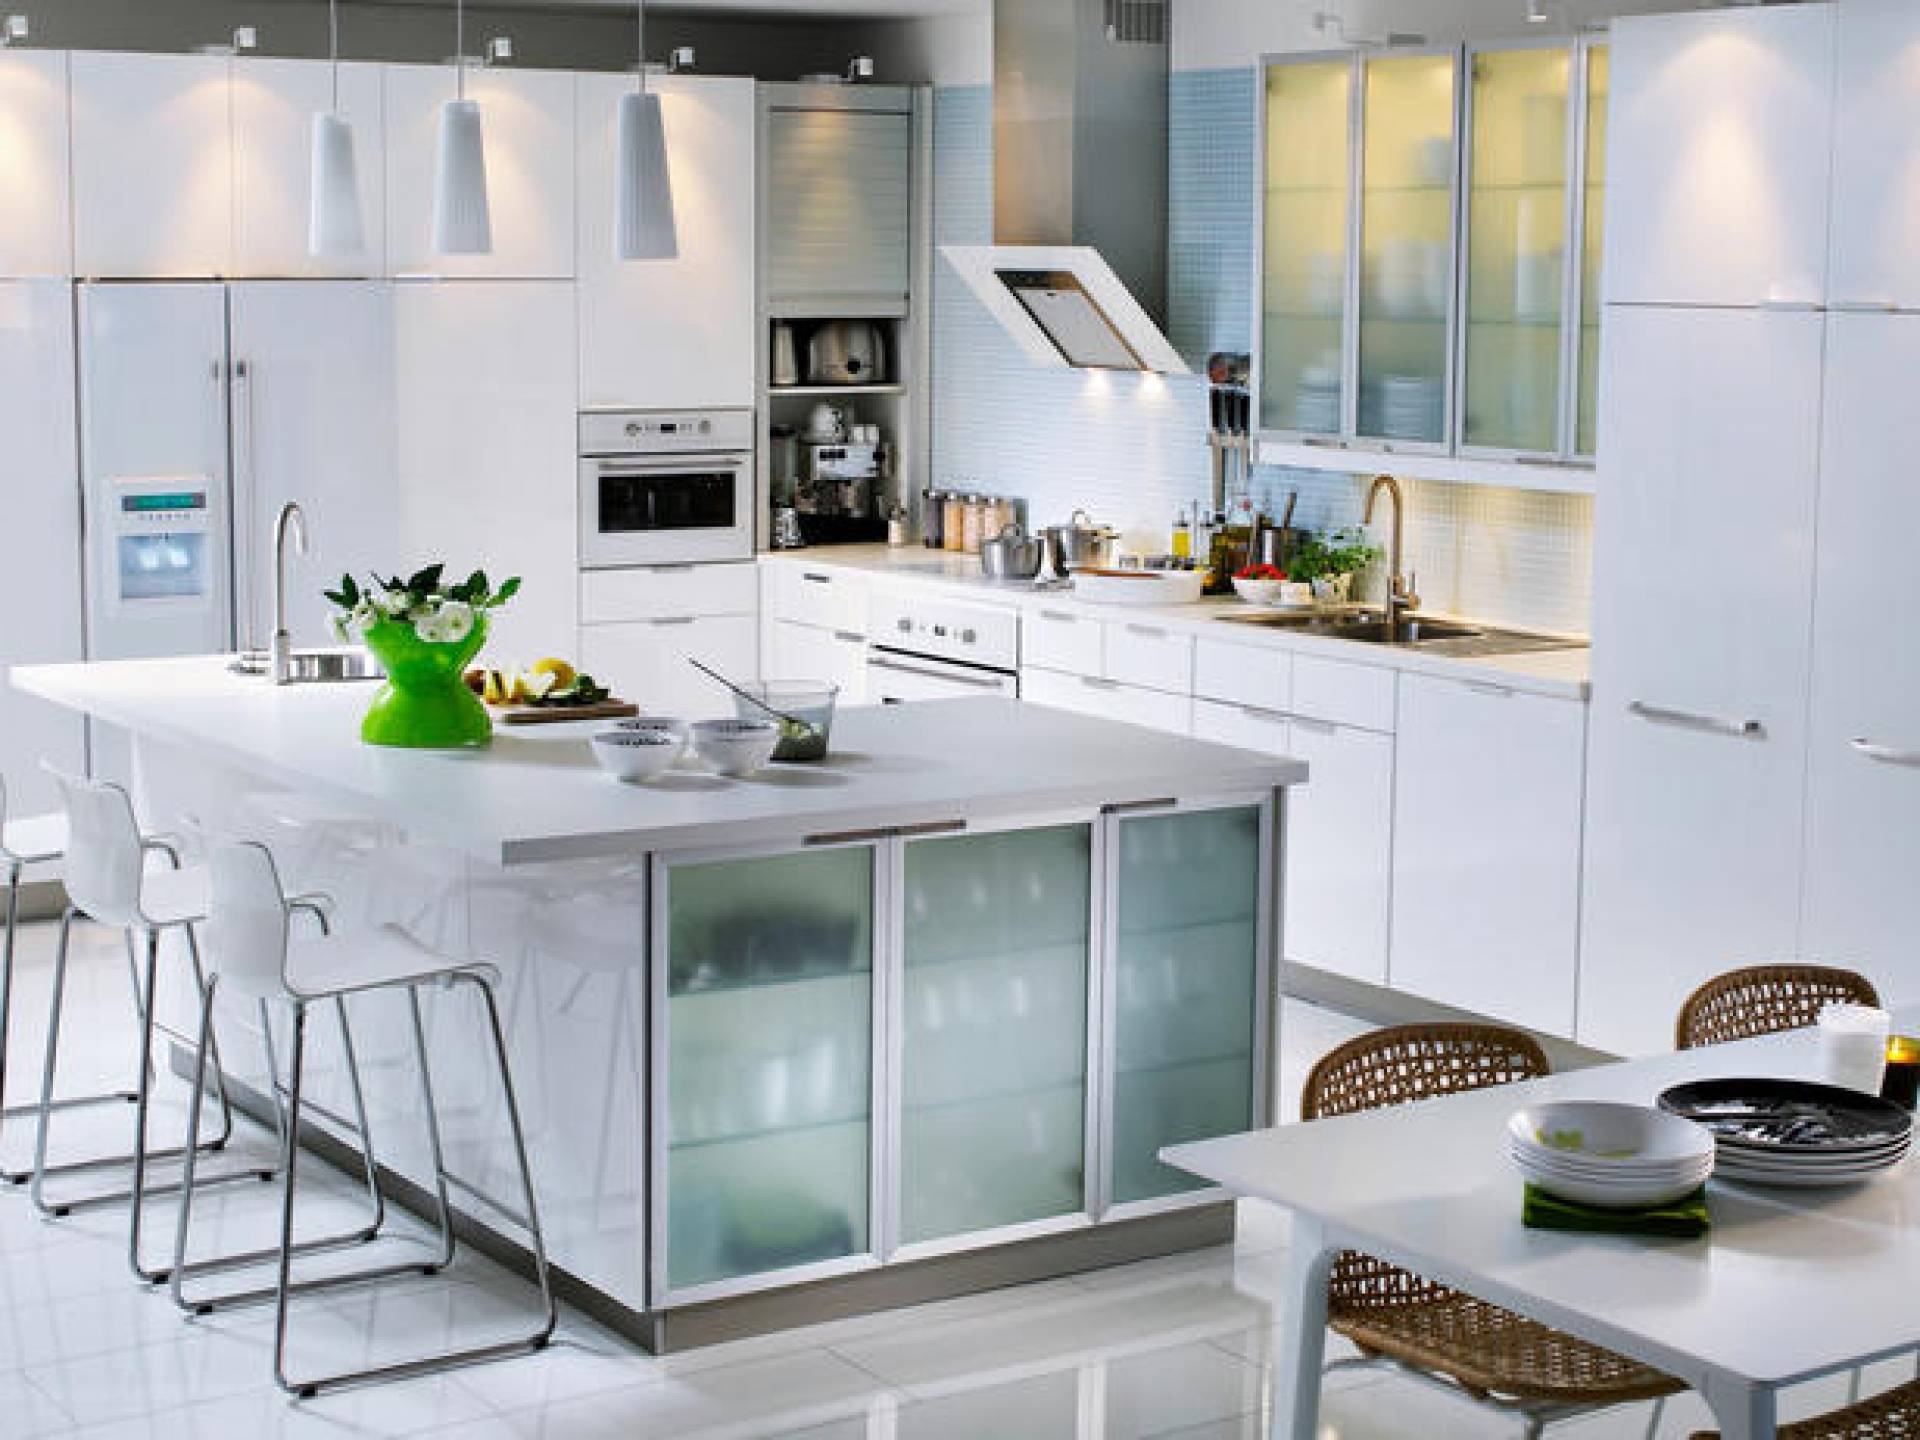 Кухня со стеклянными фасадами (27 фото) - виды и варианты дизайна